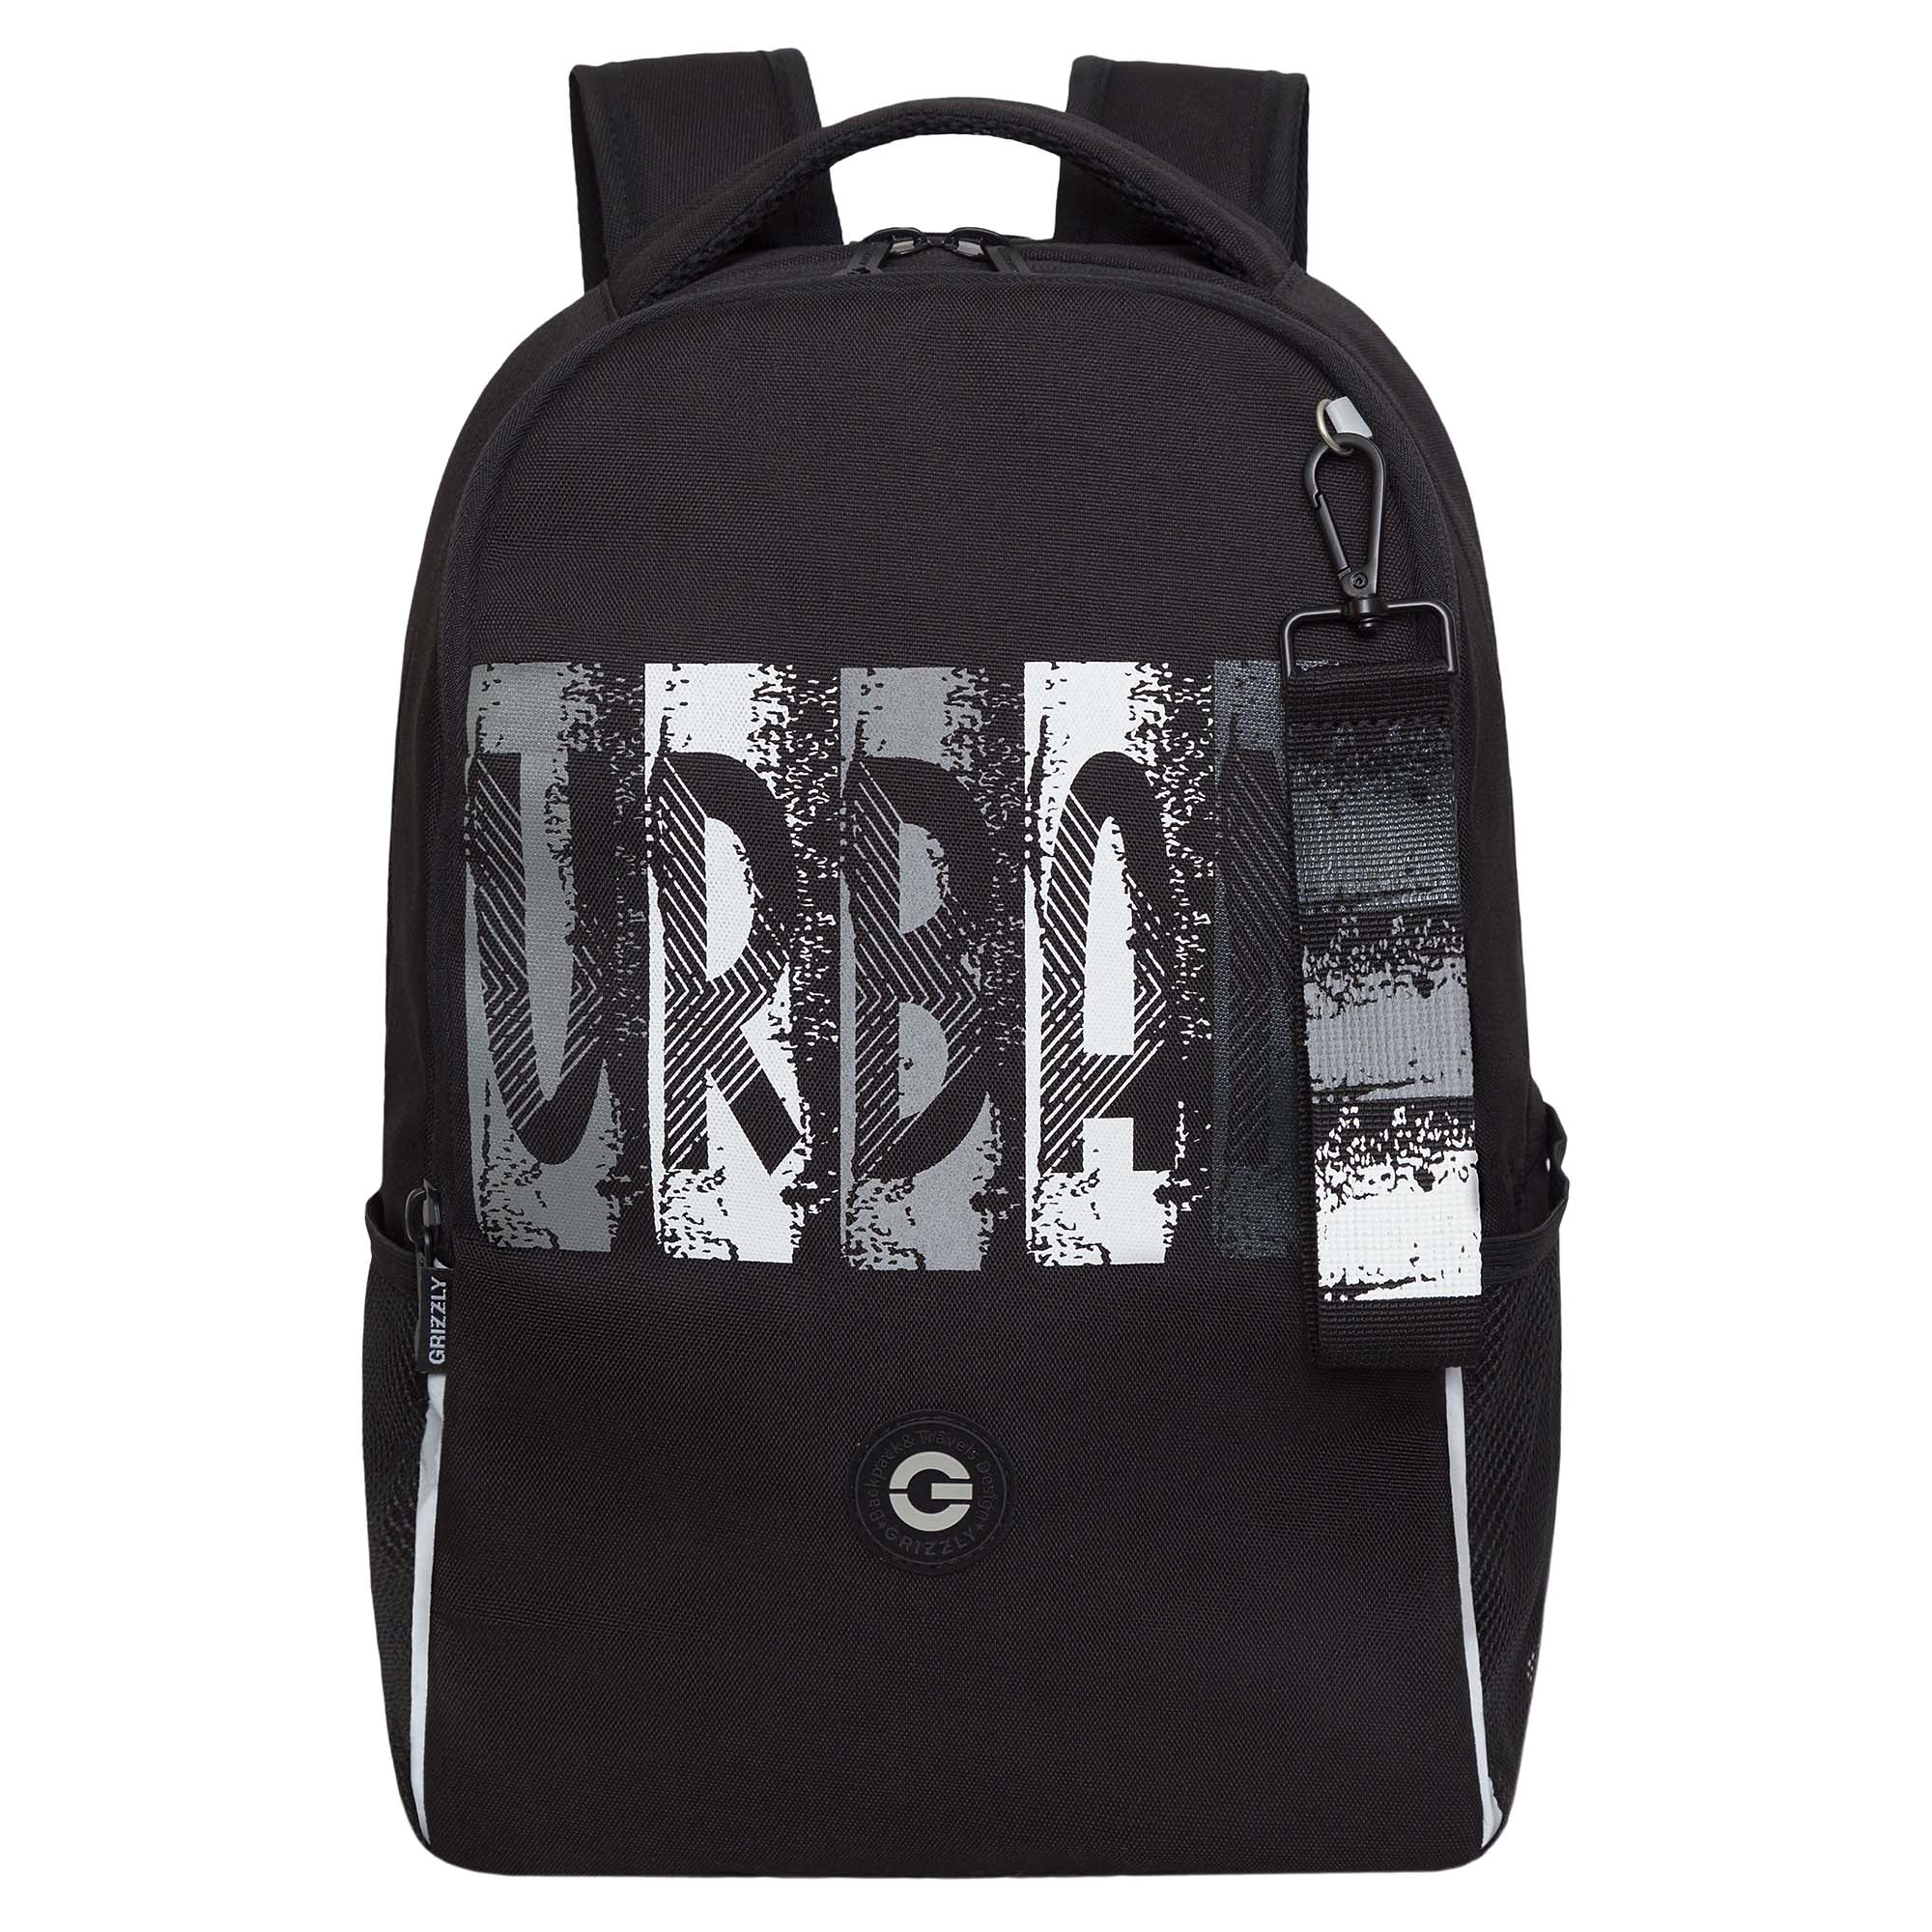 Рюкзак школьный GRIZZLY легкий с жесткой спинкой, 2 отделения, черный; серый, RB-451-3/2 рюкзак для мальчиков grizzly ru 437 4 серый